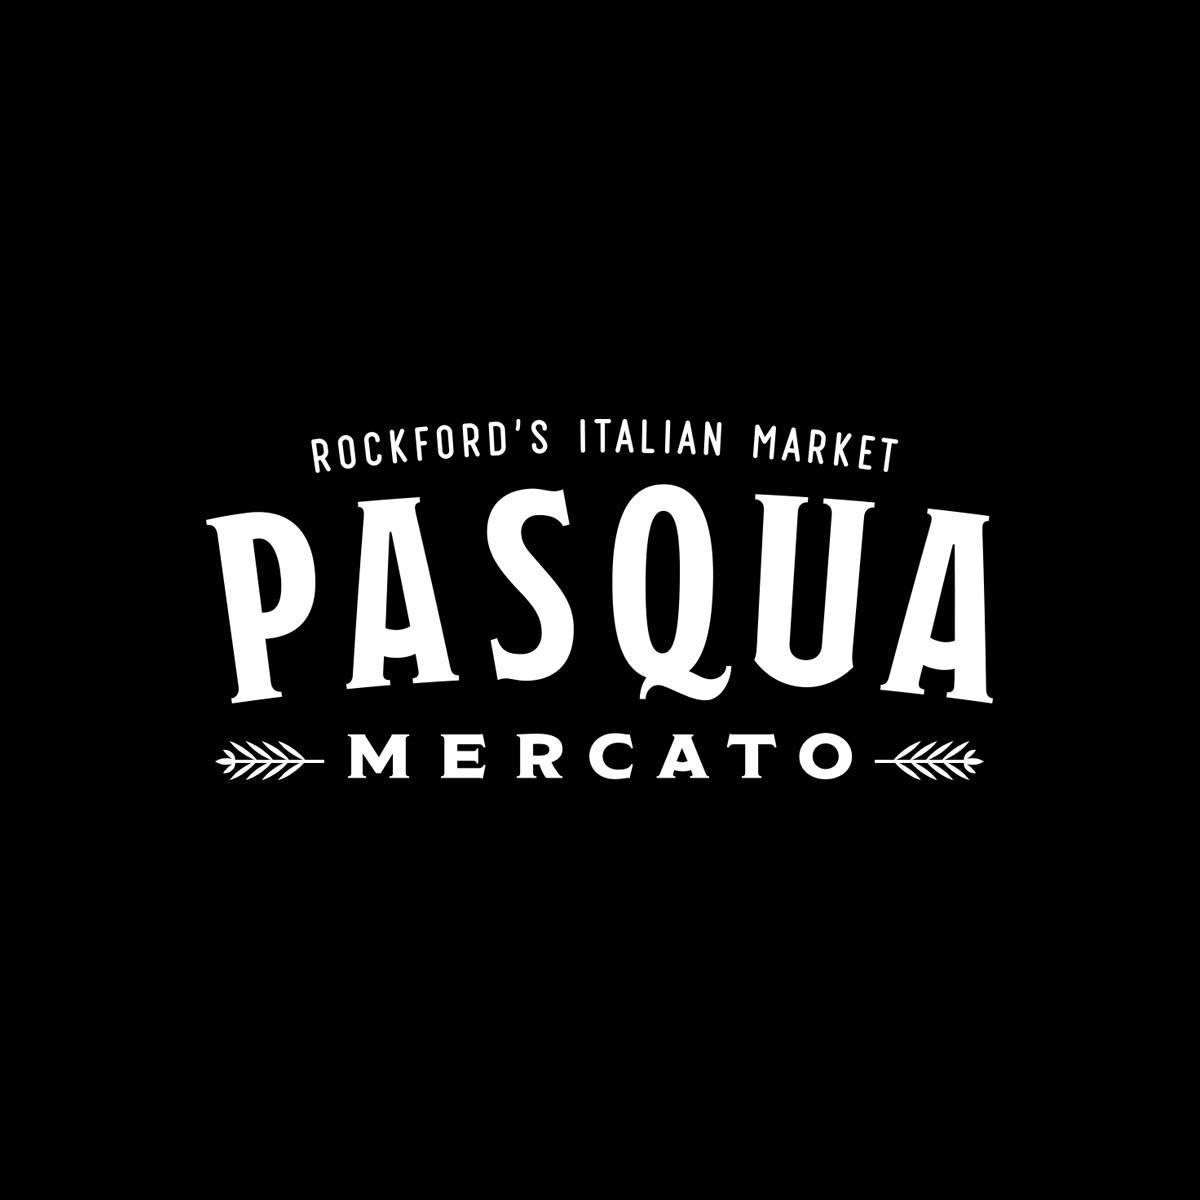 Pasqua Mercato - Rockford's Italian Market